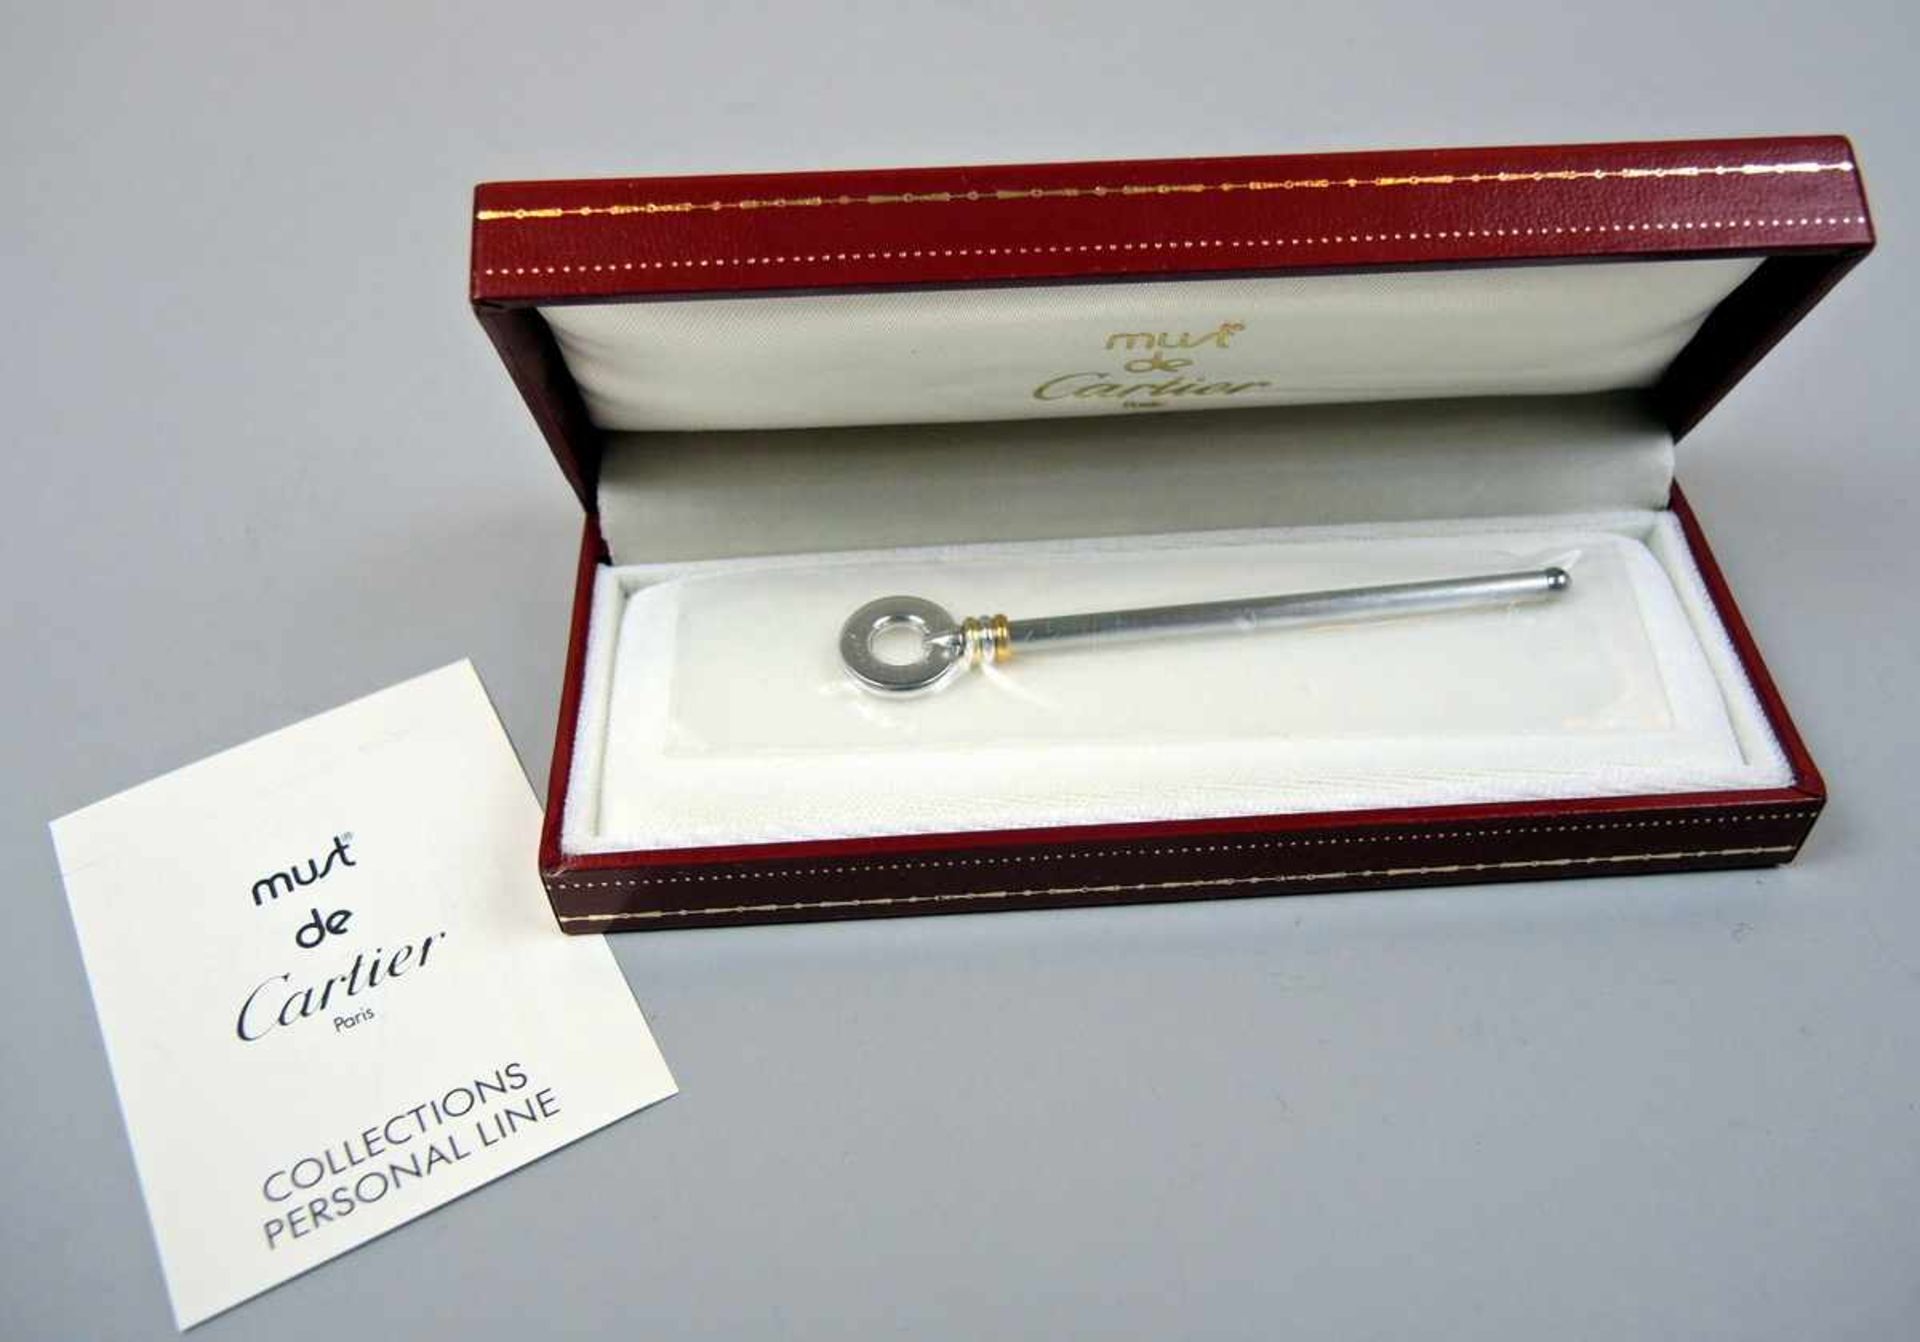 Cartier, Sektquirl Silber plated, am Griff signiert, datiert und Must de Cartier bezeichnet. Feine